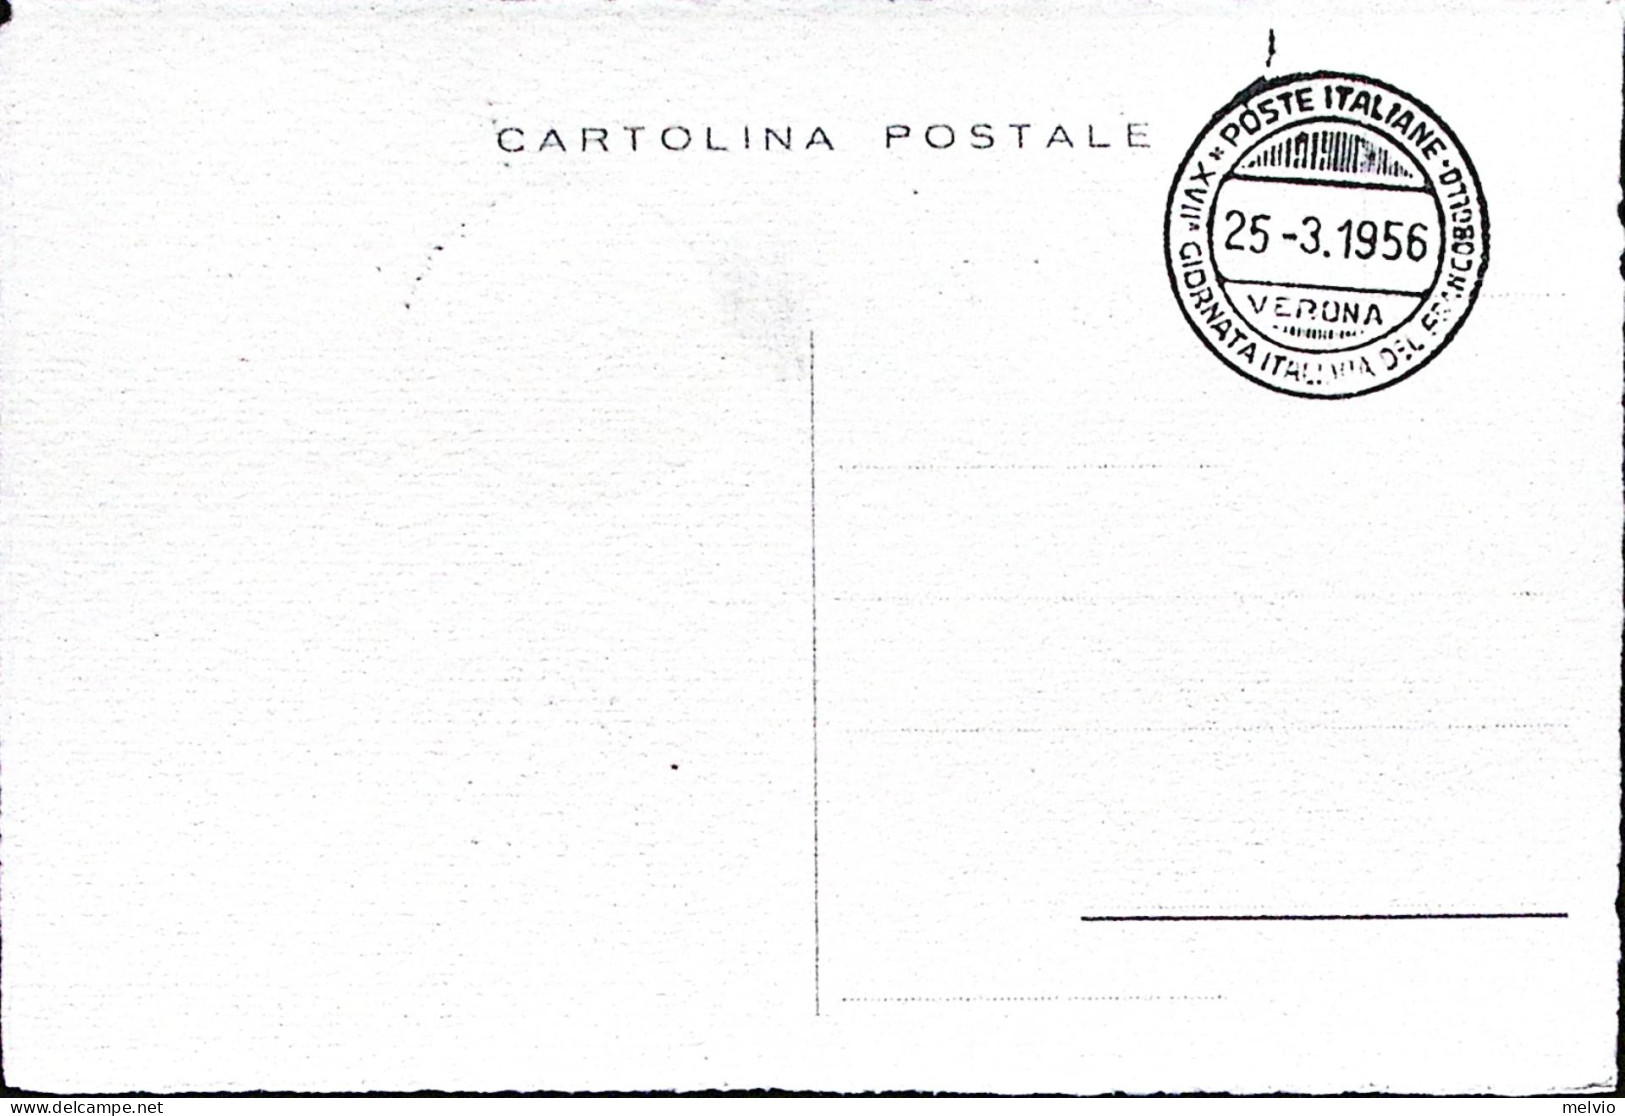 1956-VERONA XVII^GIONATA FRANCOBOLLO Annullo Speciale (25.3) Su Cartolina - Demonstrationen